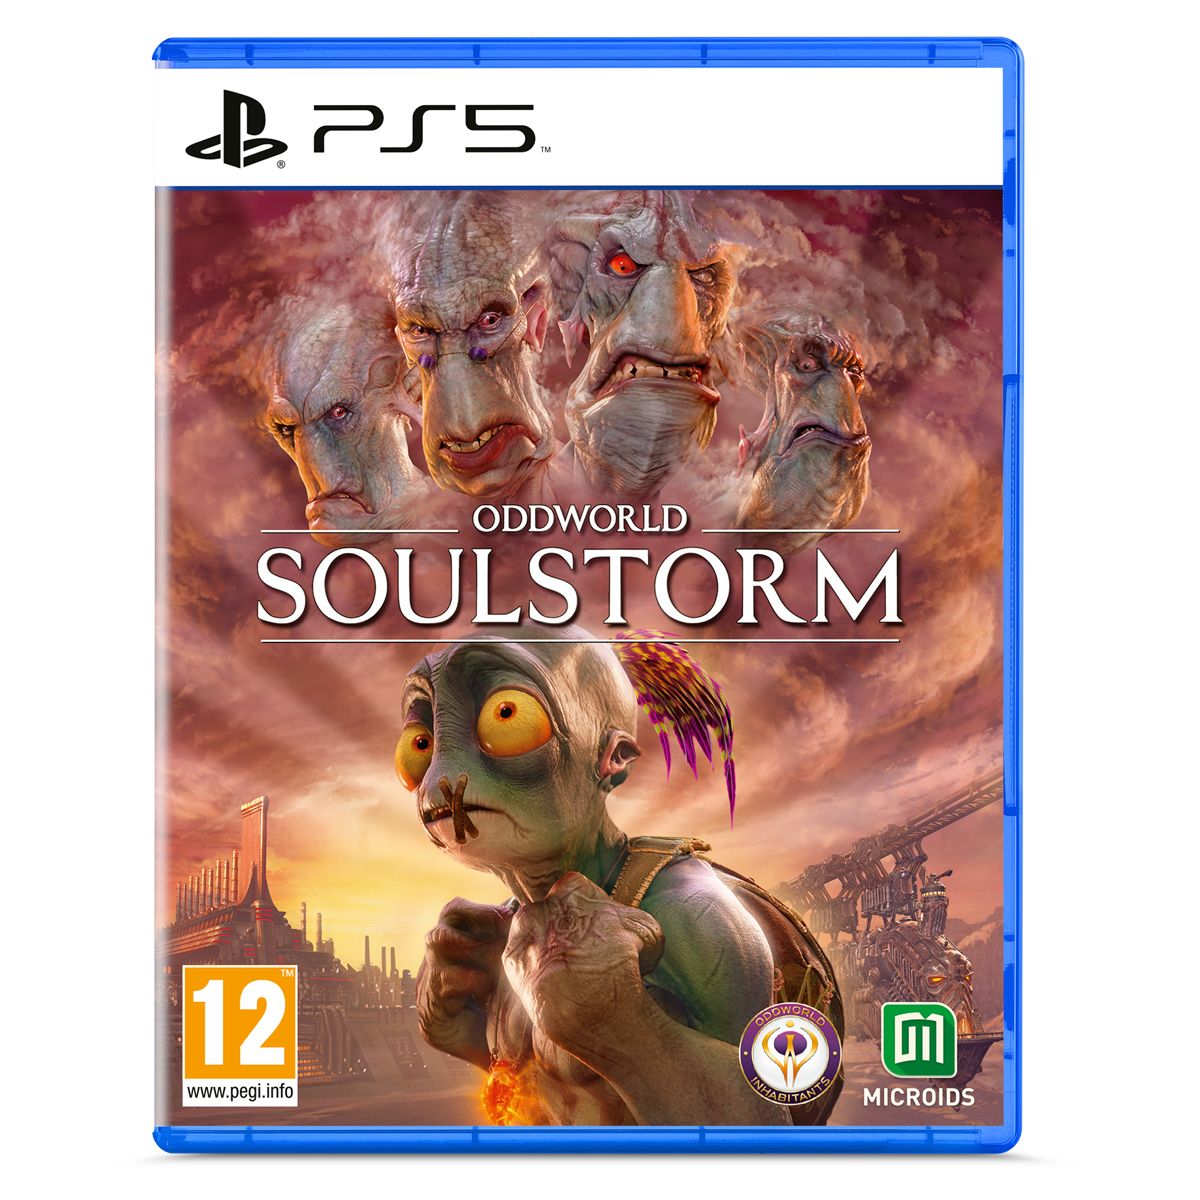 OddWorld Soulstorm PS5